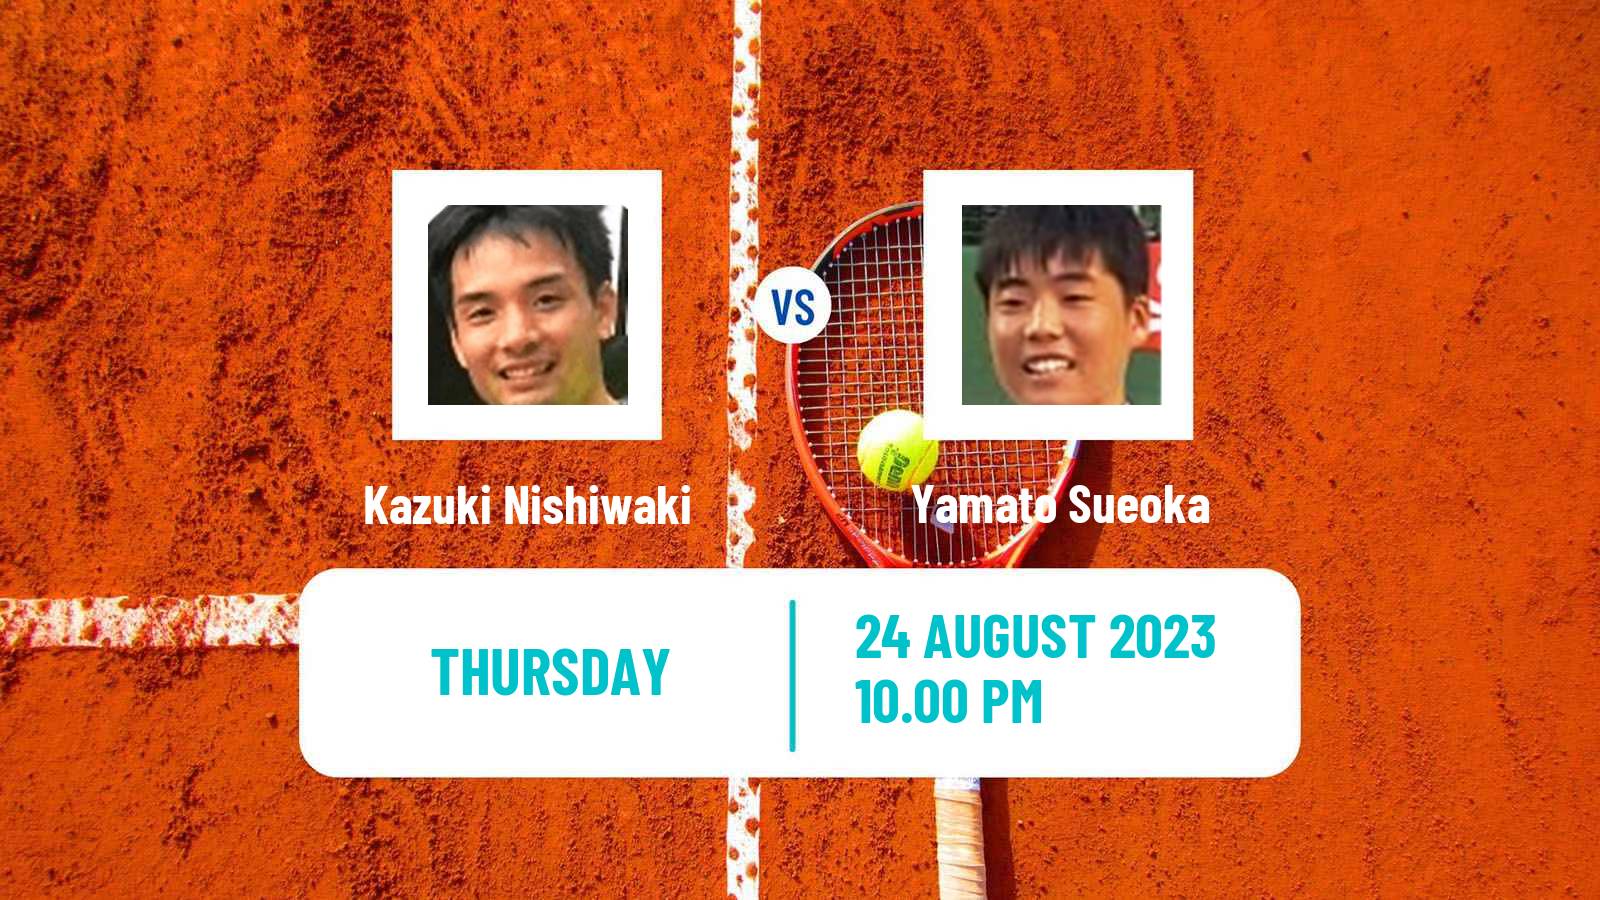 Tennis ITF M25 Tainan 2 Men Kazuki Nishiwaki - Yamato Sueoka